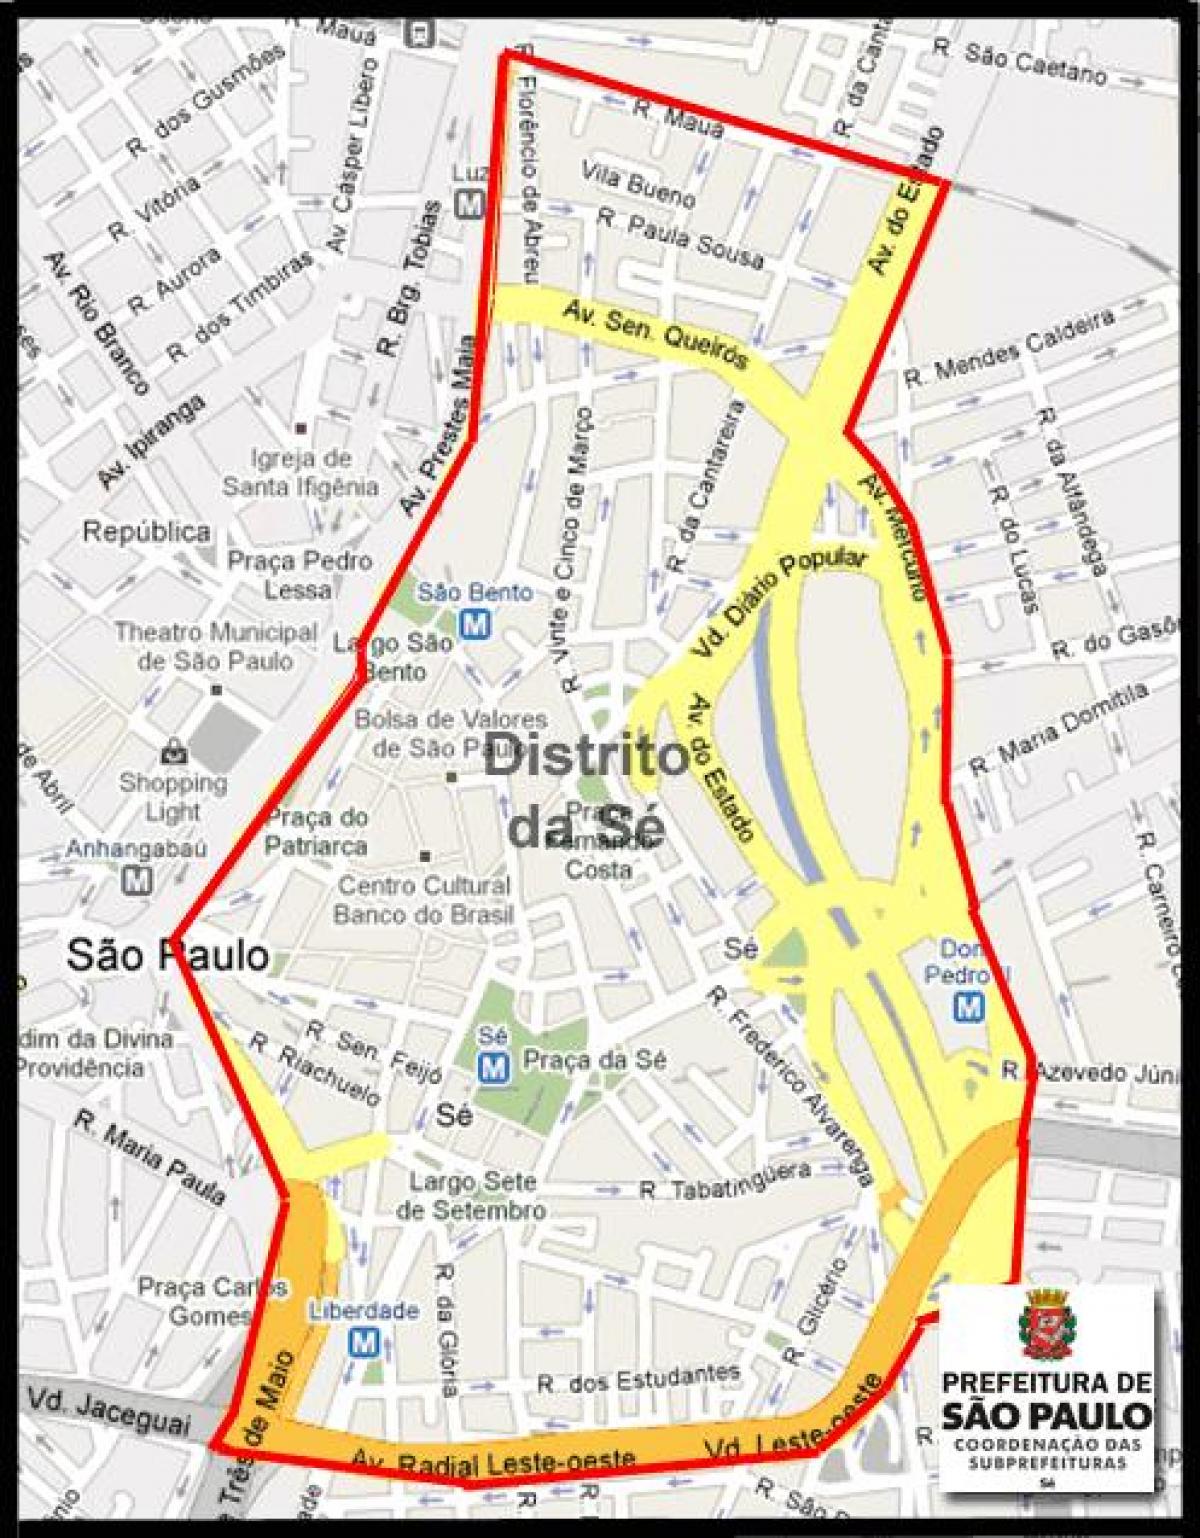 Kort af Sé Sao Paulo